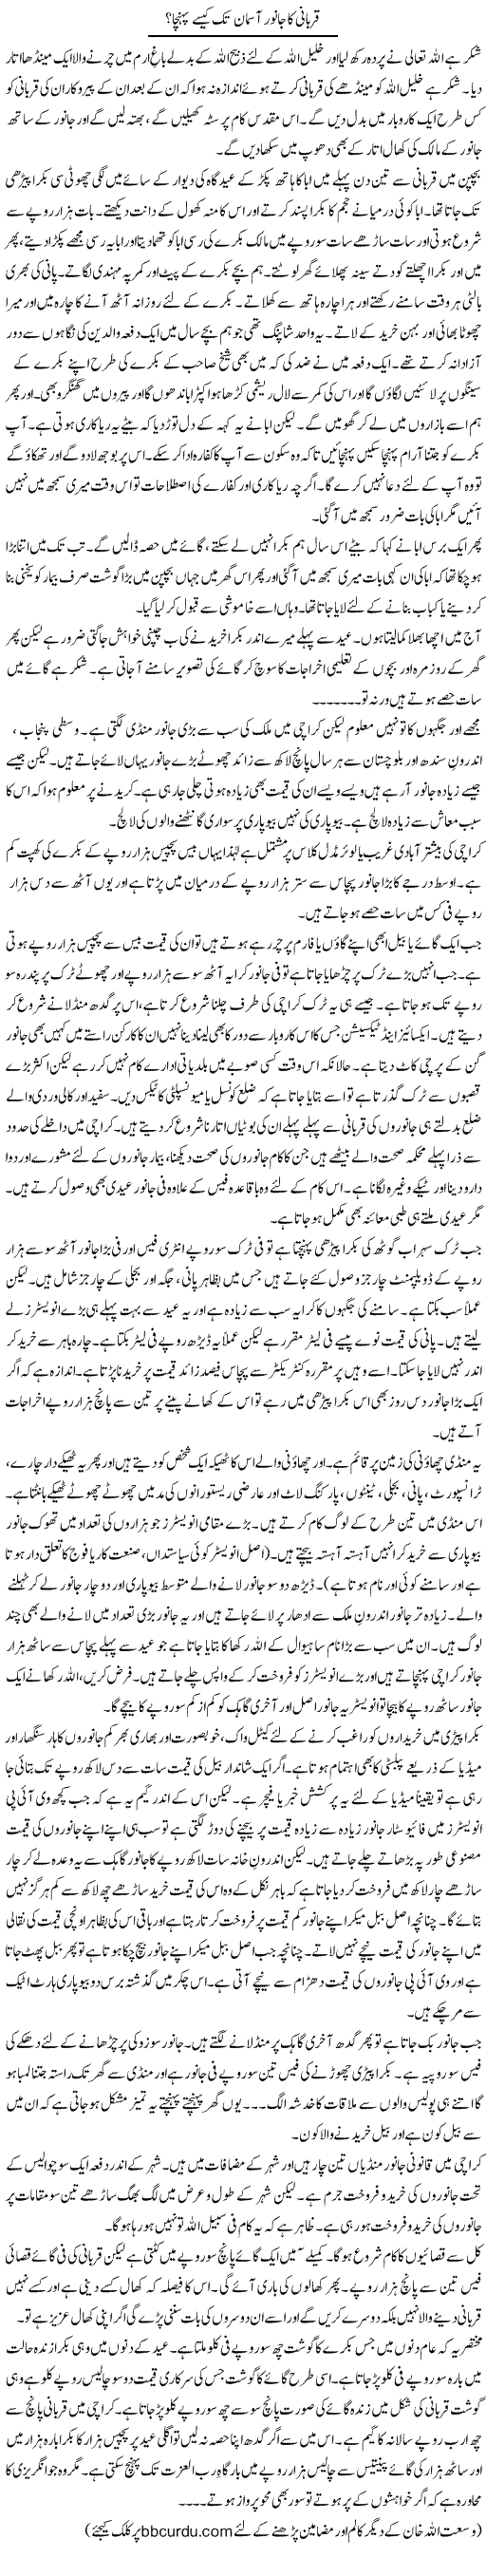 Qurbani Ka Janwar Aasman Tak Kaise Pohancha? | Wusat Ullah Khan | Daily Urdu Columns